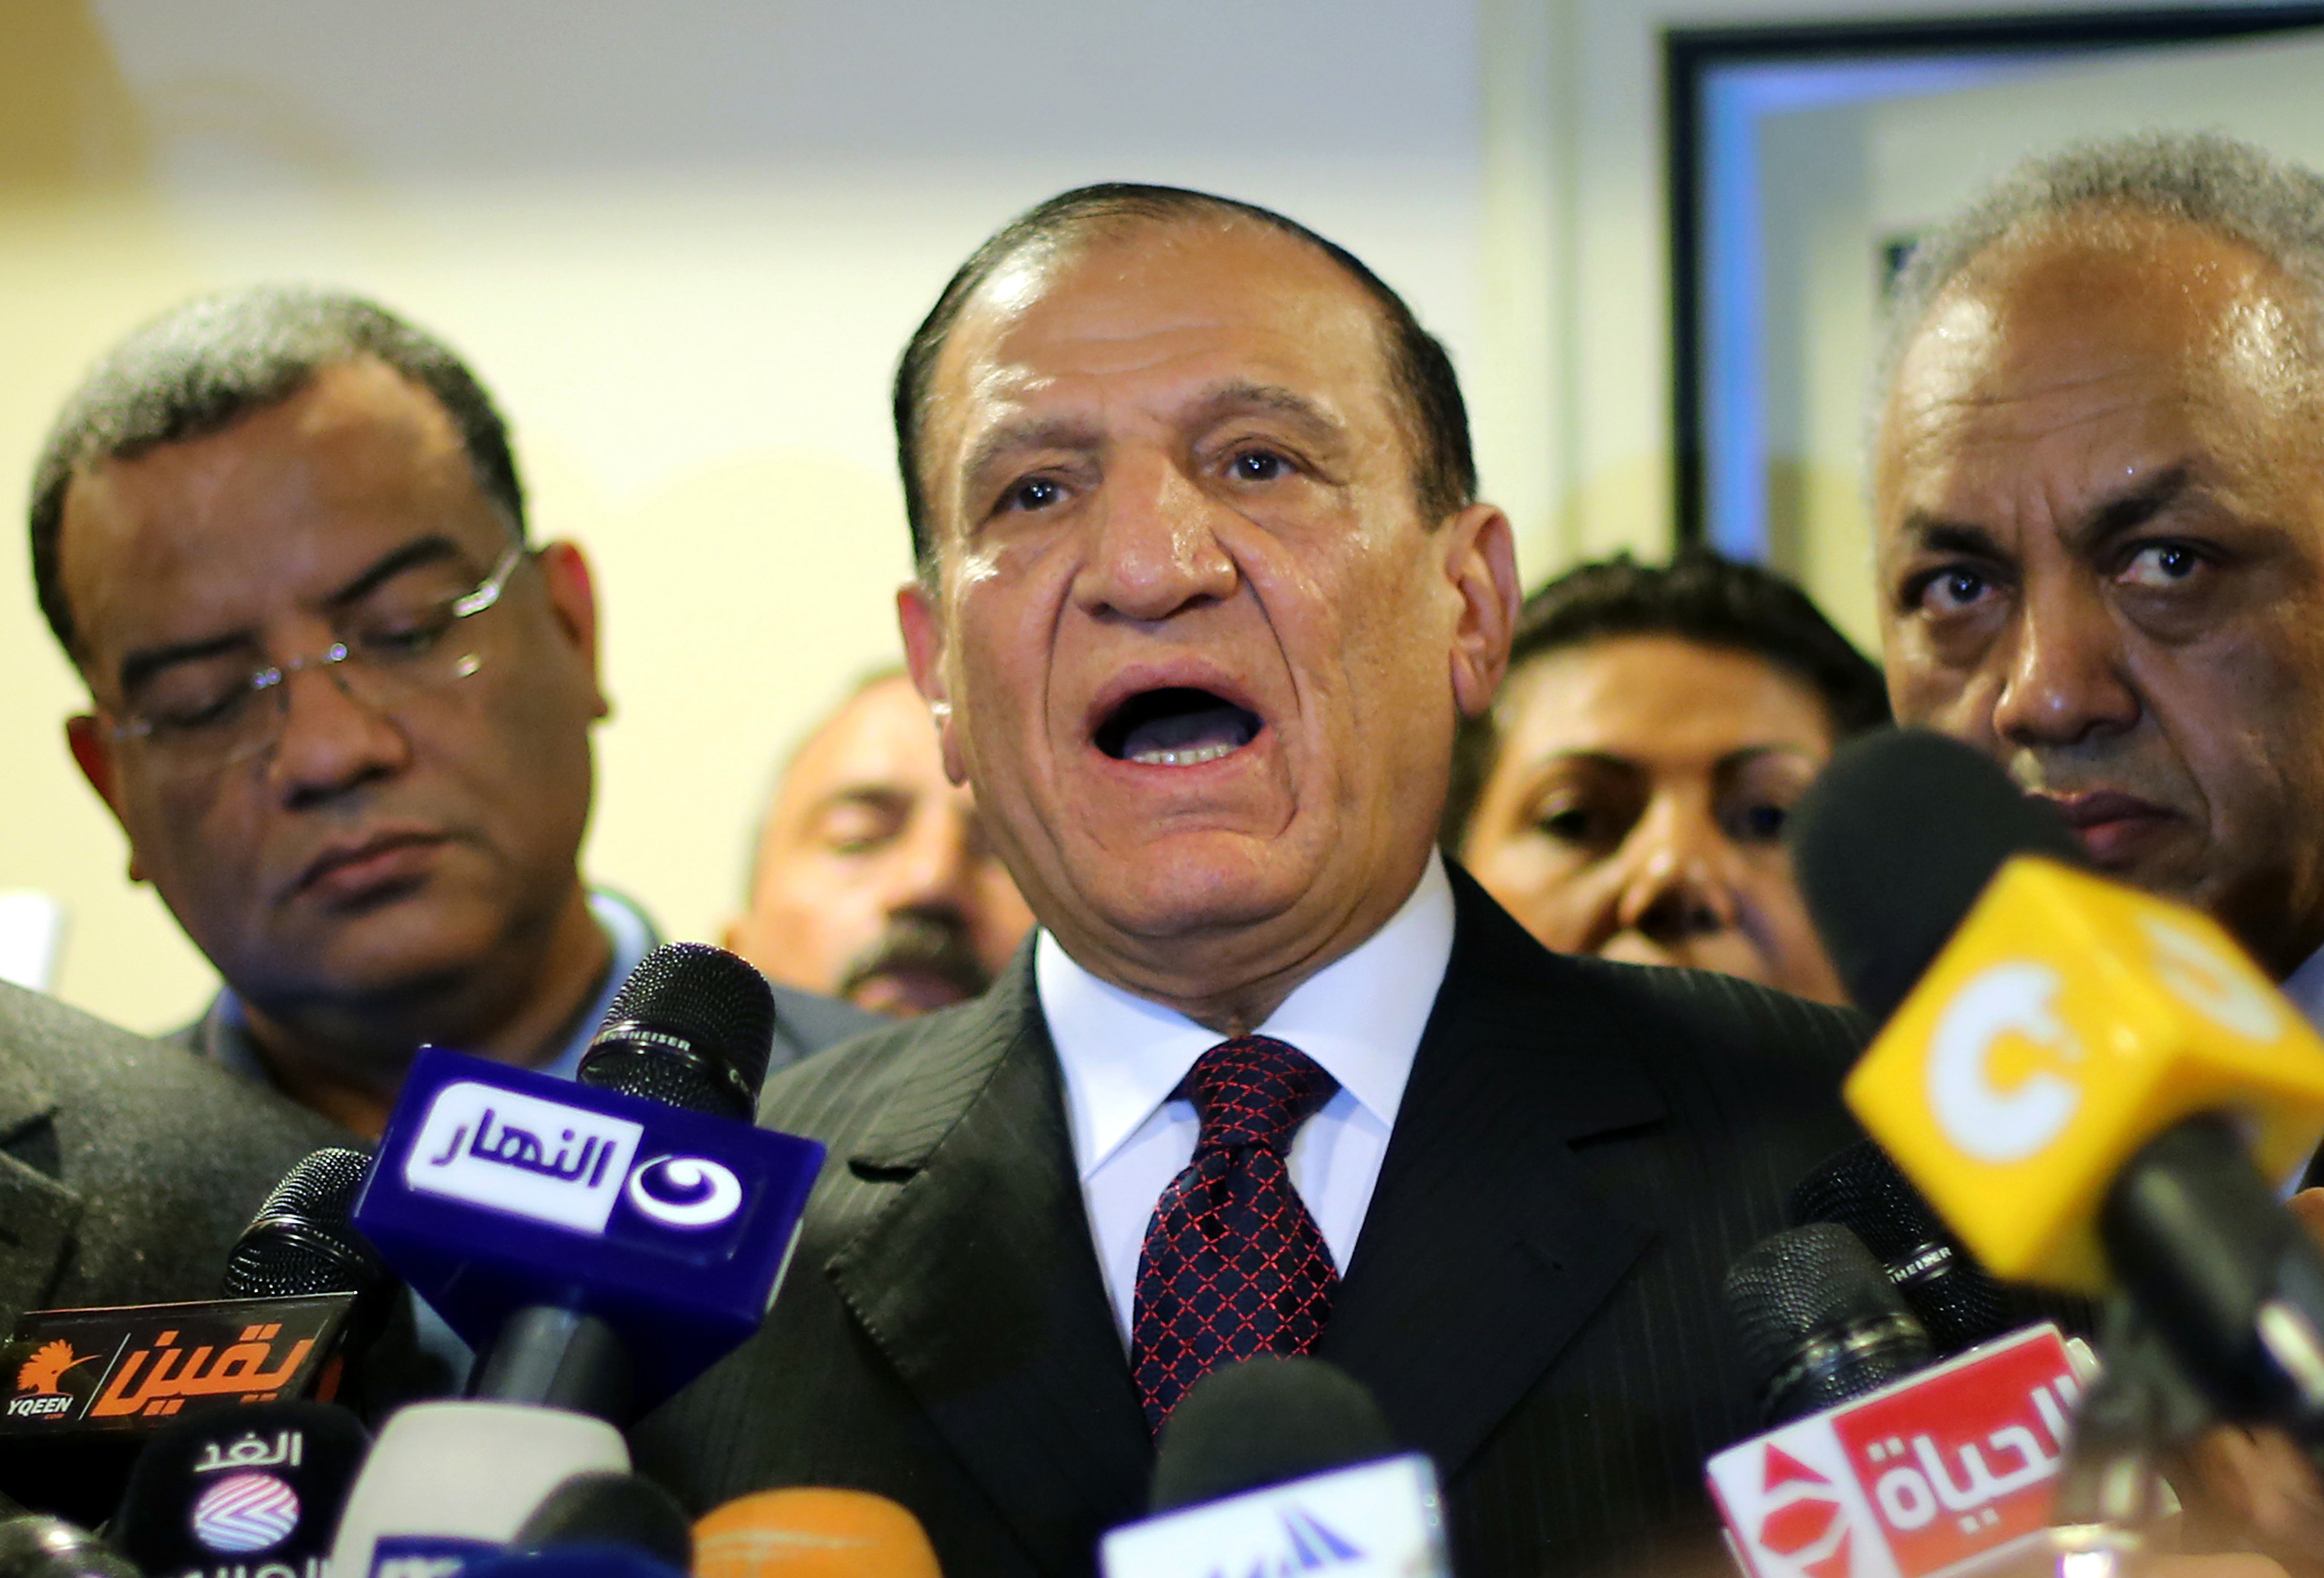 Bejelentette, hogy elindul az egyiptomi elnök ellen, három nappal később letartóztatták